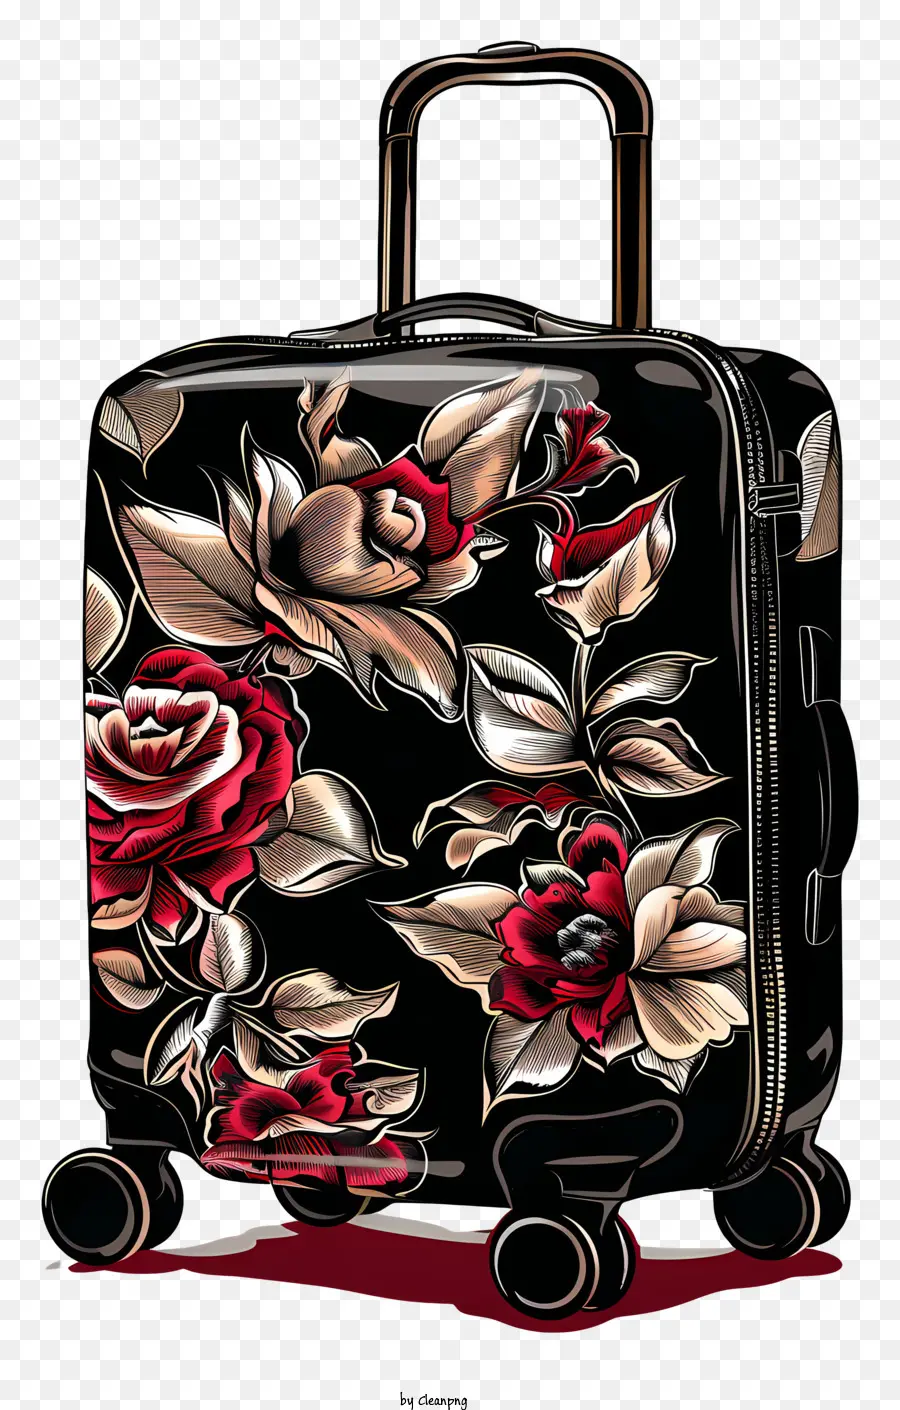 motivo floreale - Valigia nera con fiori rosa, rossi, bianchi